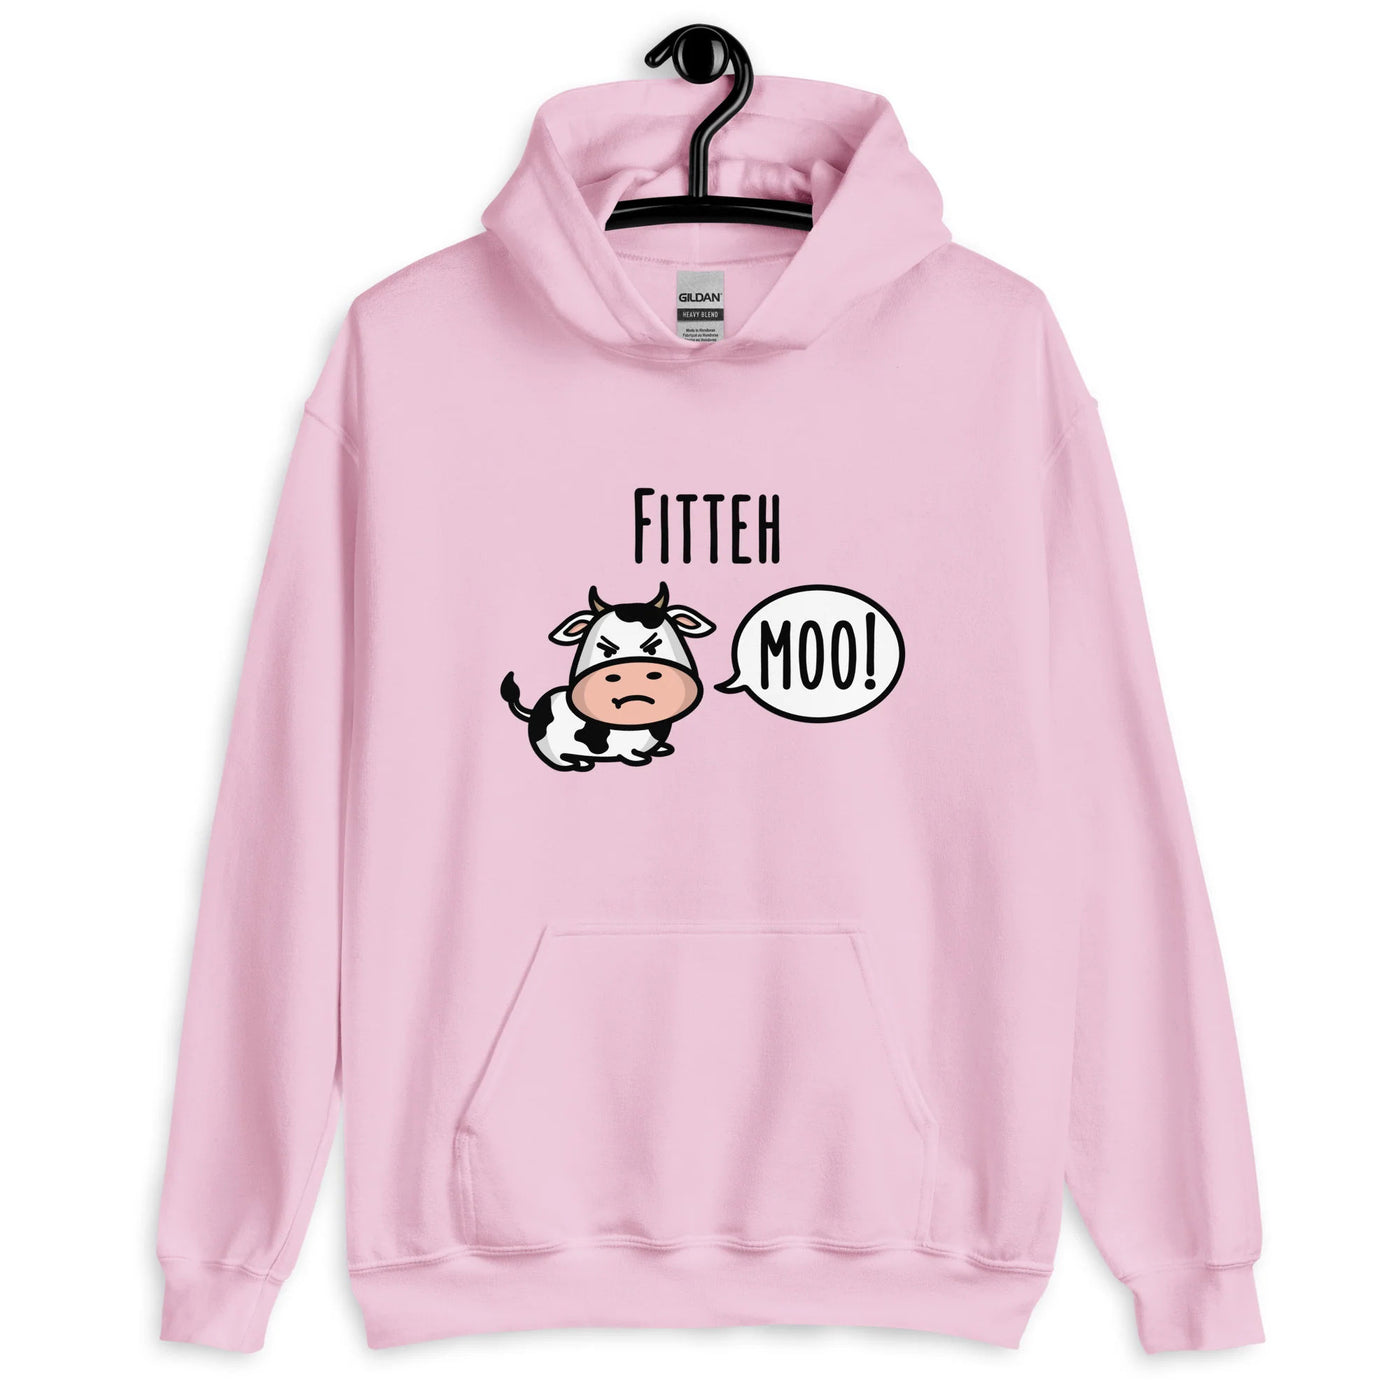 Fitteh Moo Hoodie by The Cute Pista